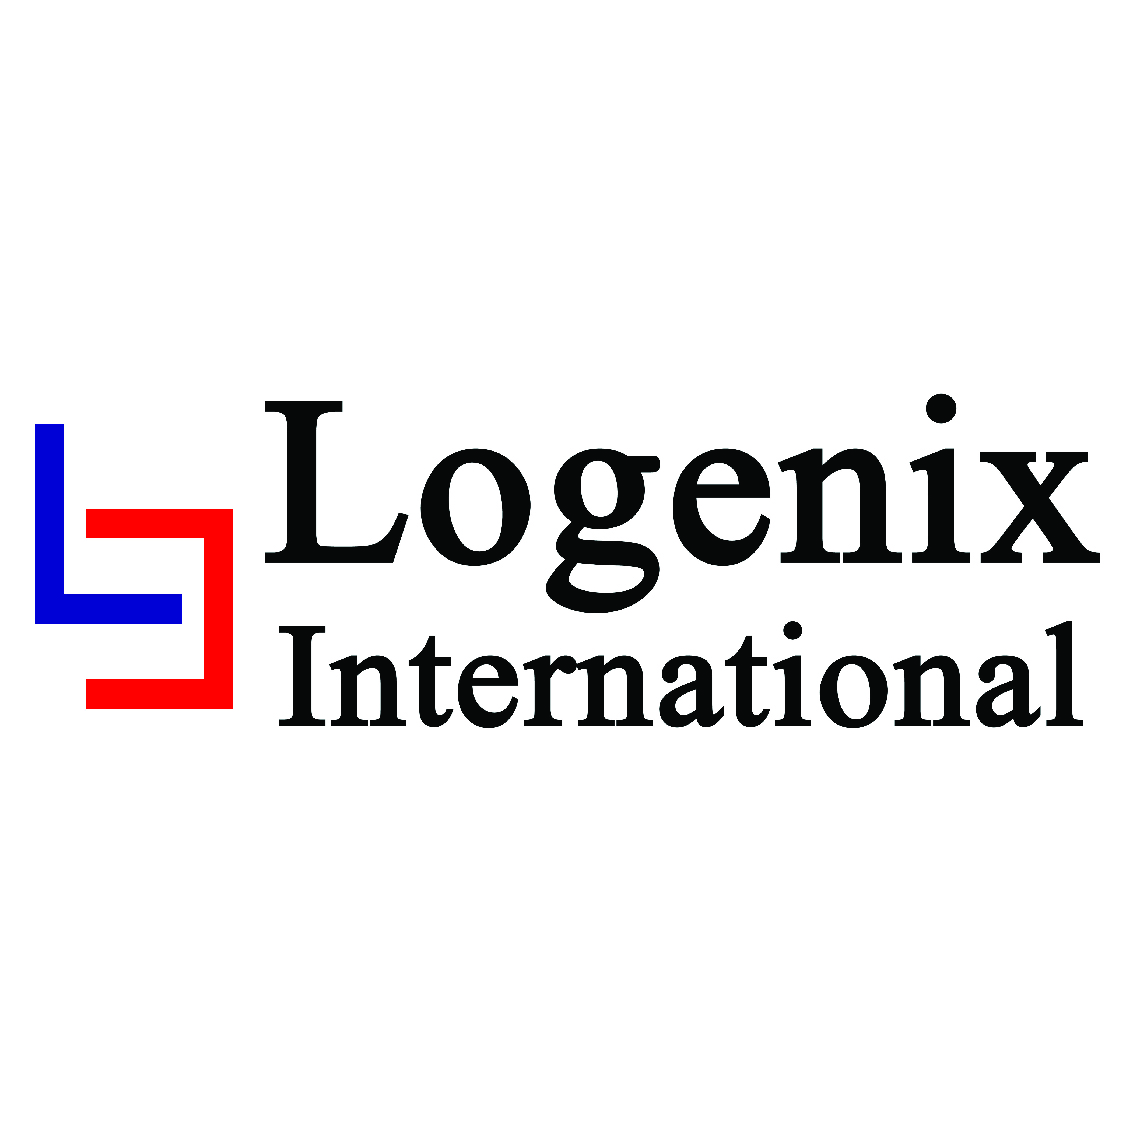 Logenix International